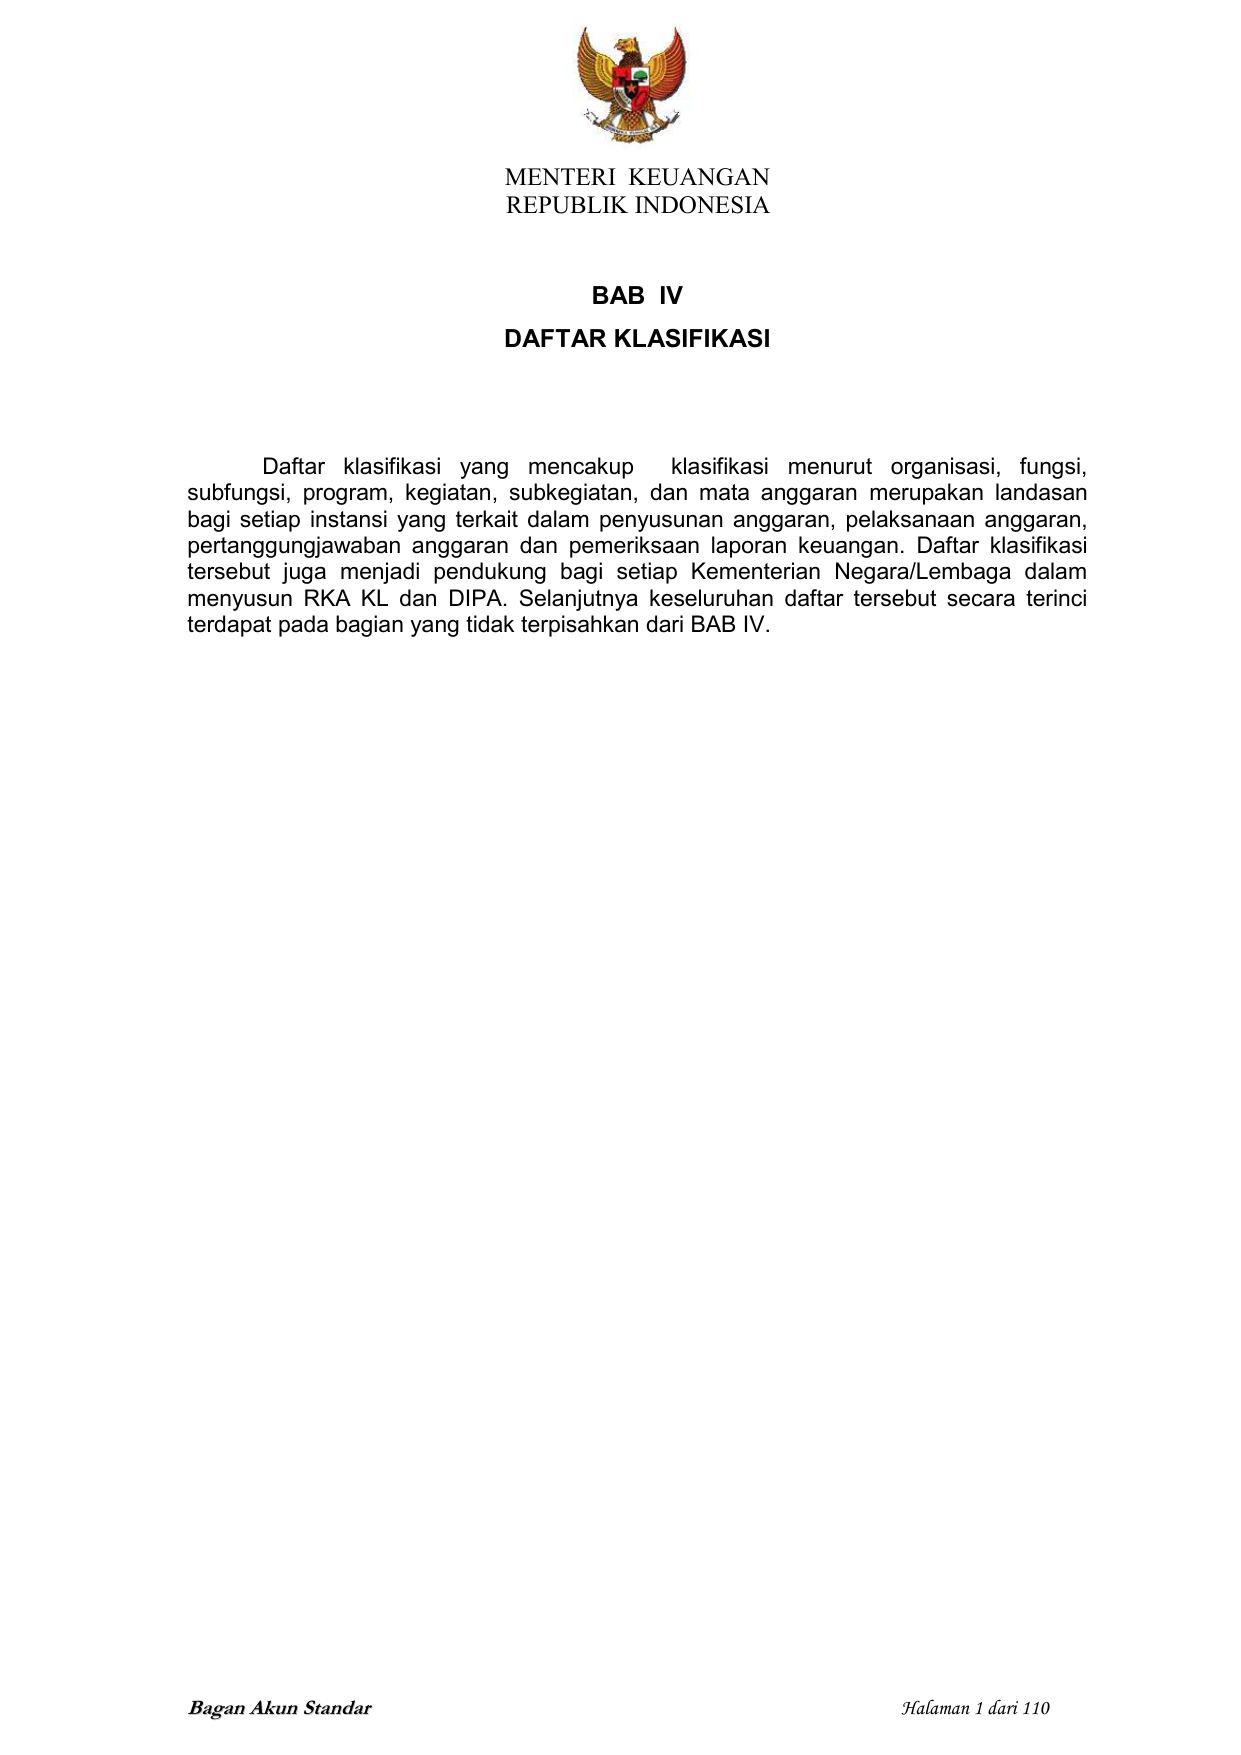 MENTERI KEUANGAN REPUBLIK INDONESIA BAB IV DAFTAR KLASIFIKASI Daftar klasifikasi yang mencakup klasifikasi menurut organisasi fungsi subfungsi program